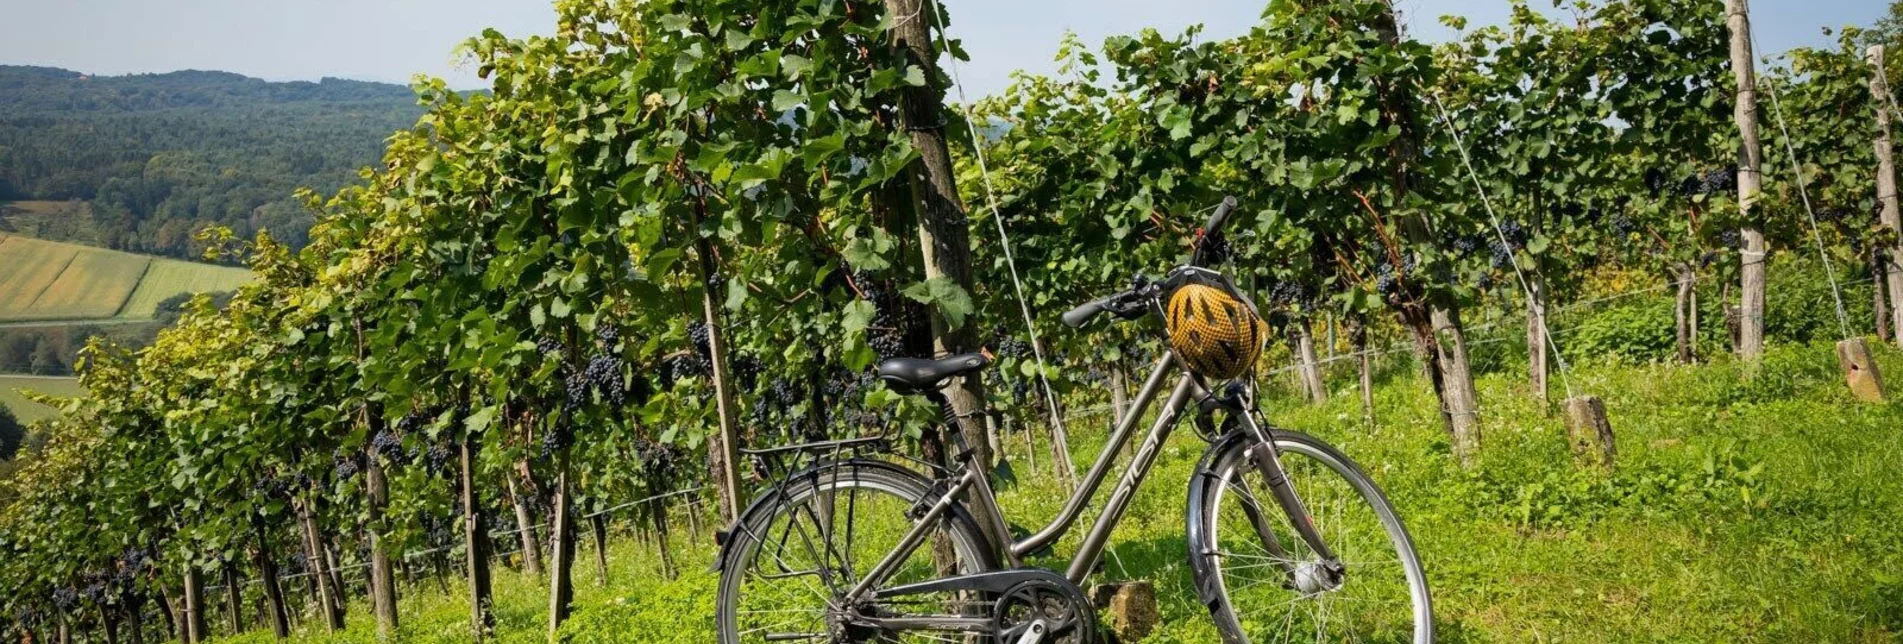 Bike Riding Kraftquellen Tour - Touren-Impression #1 | © Werner Krug